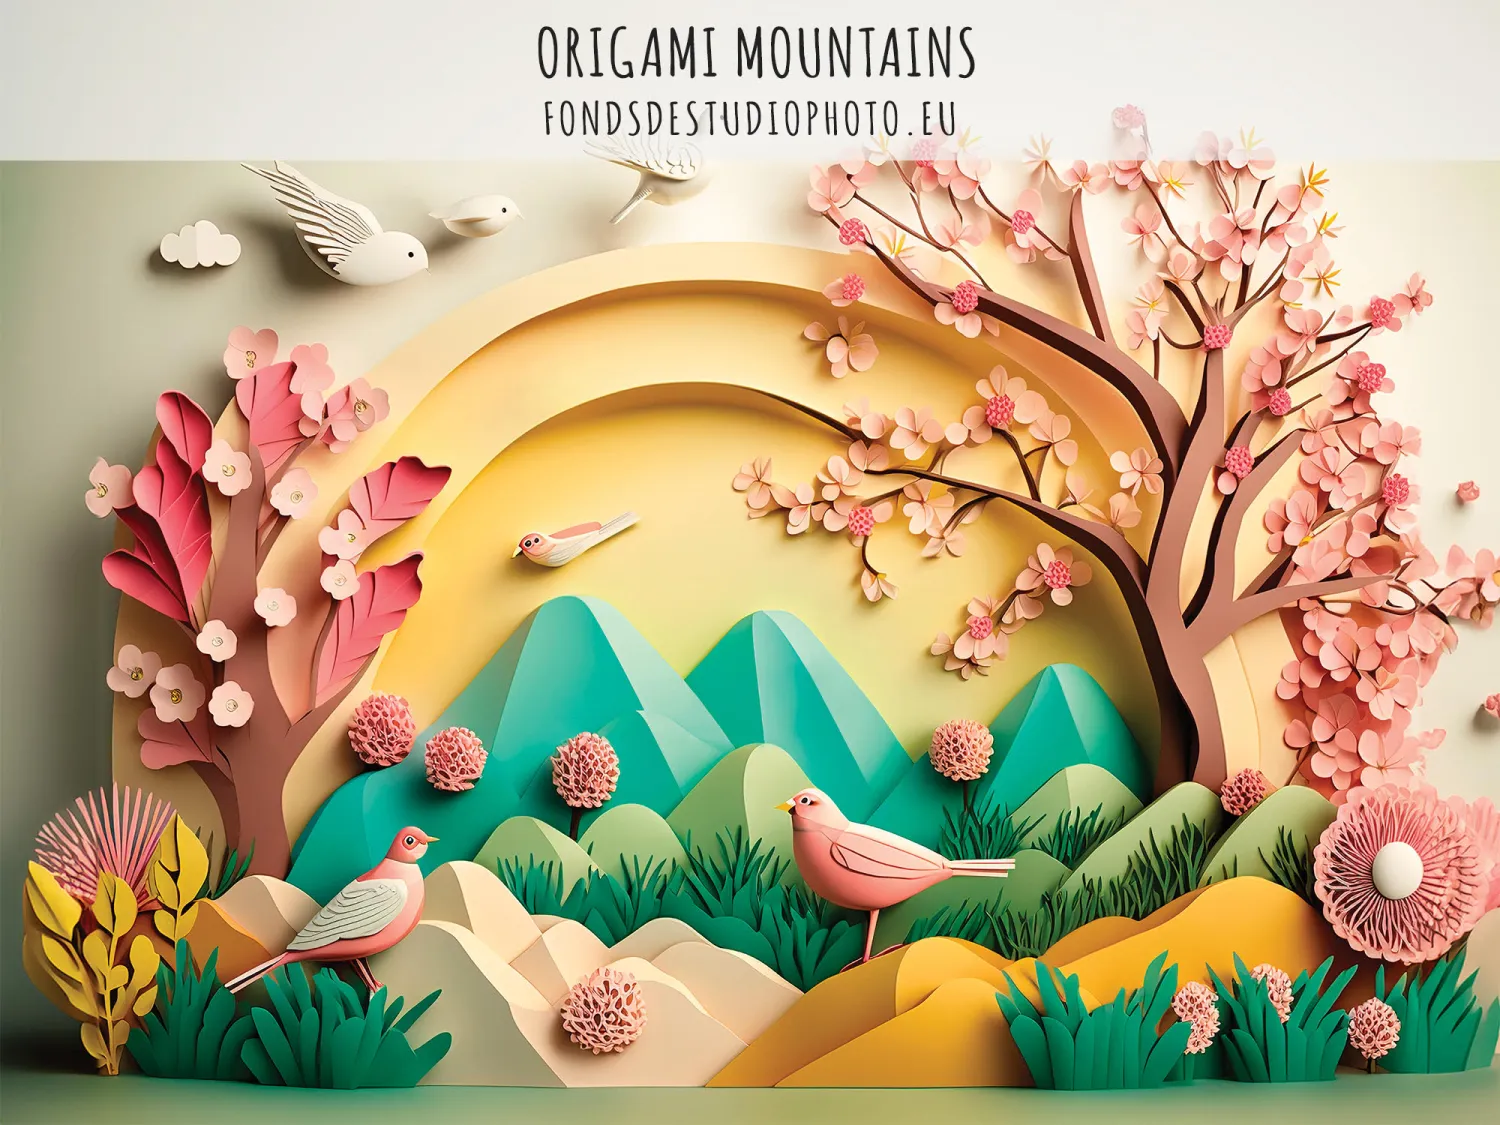 Origami Mountains